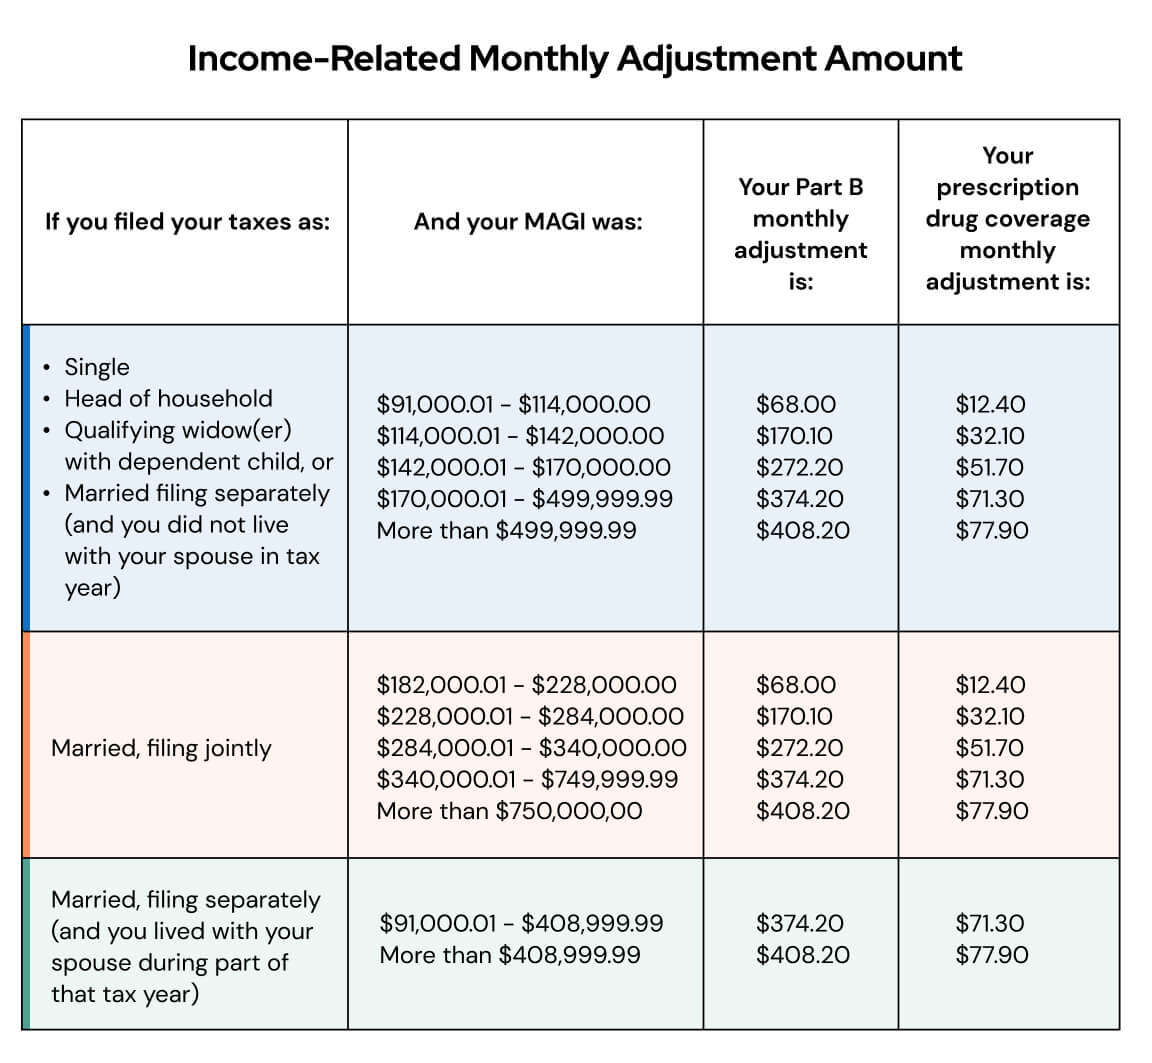 Related Monthly Adjustment Amount (IRMAA)